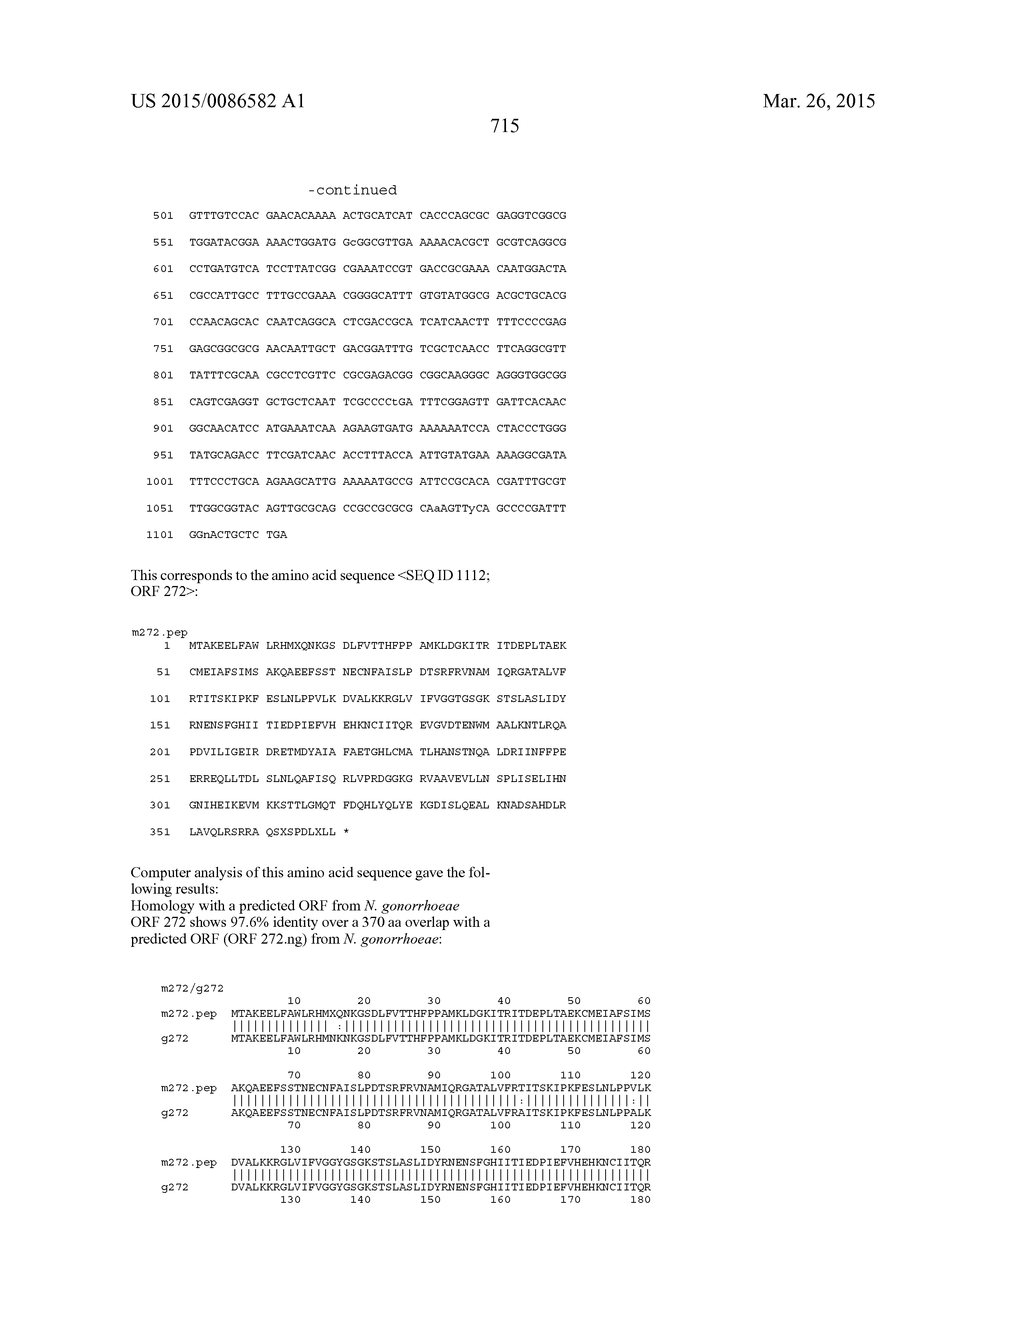 NEISSERIA MENINGITIDIS ANTIGENS AND COMPOSITIONS - diagram, schematic, and image 747